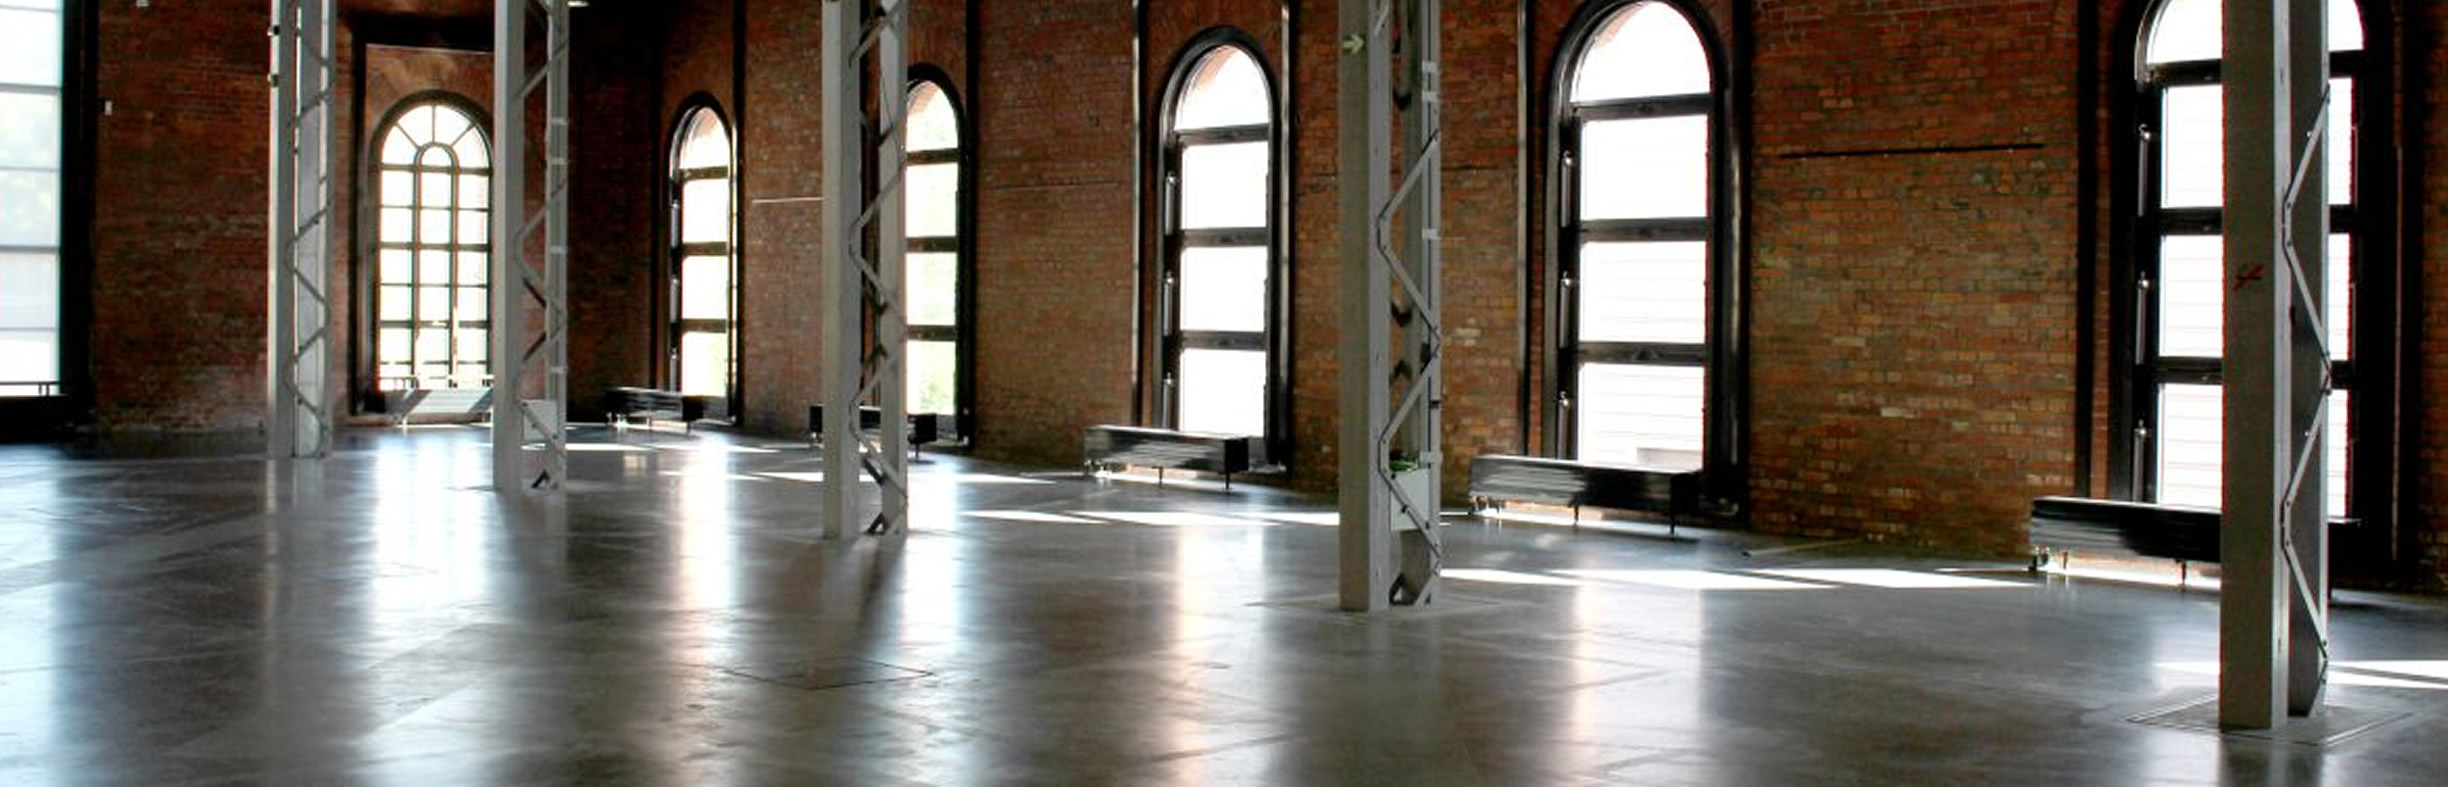 eine leere Ausstellungshalle des Industriemuseums Chemnitz, Licht dringt durch hohe Bogenfenster in den Raum